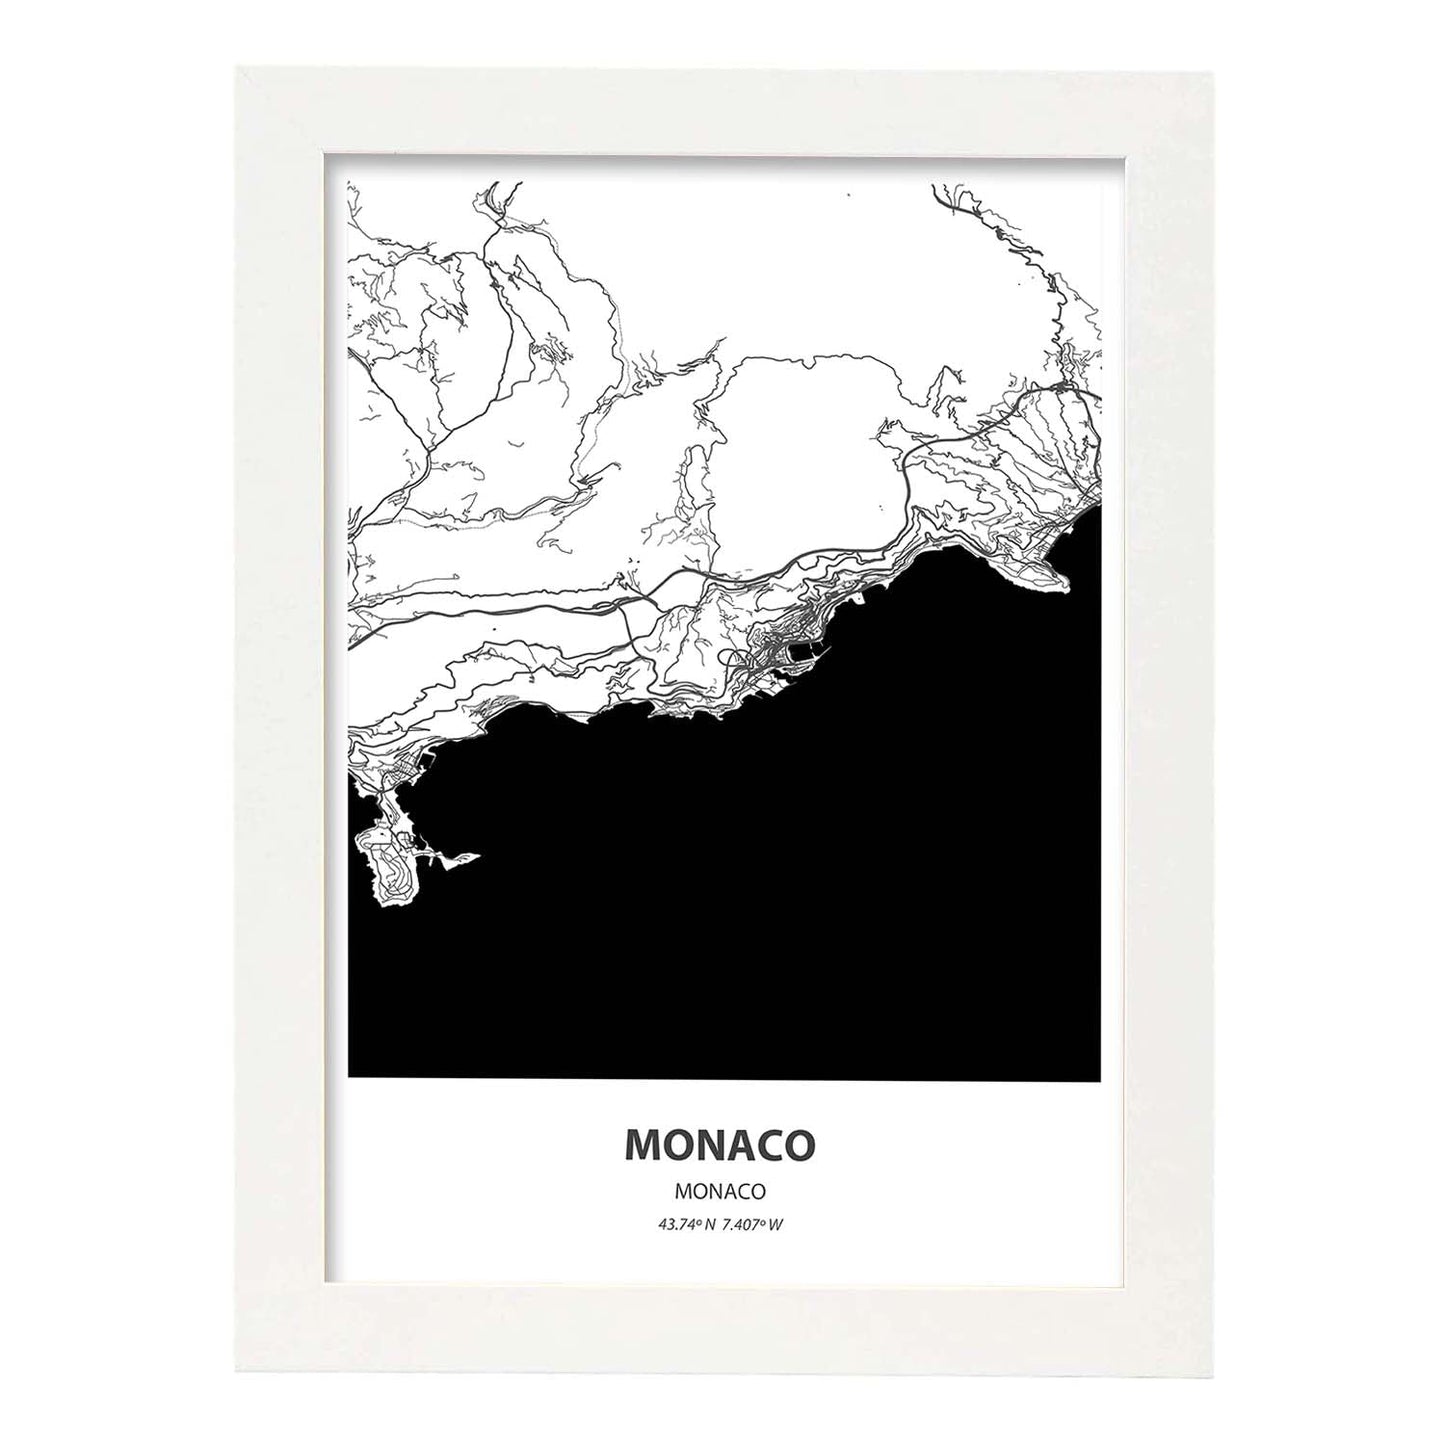 Poster con mapa de Monaco - Monaco. Láminas de ciudades de Europa con mares y ríos en color negro.-Artwork-Nacnic-A4-Marco Blanco-Nacnic Estudio SL